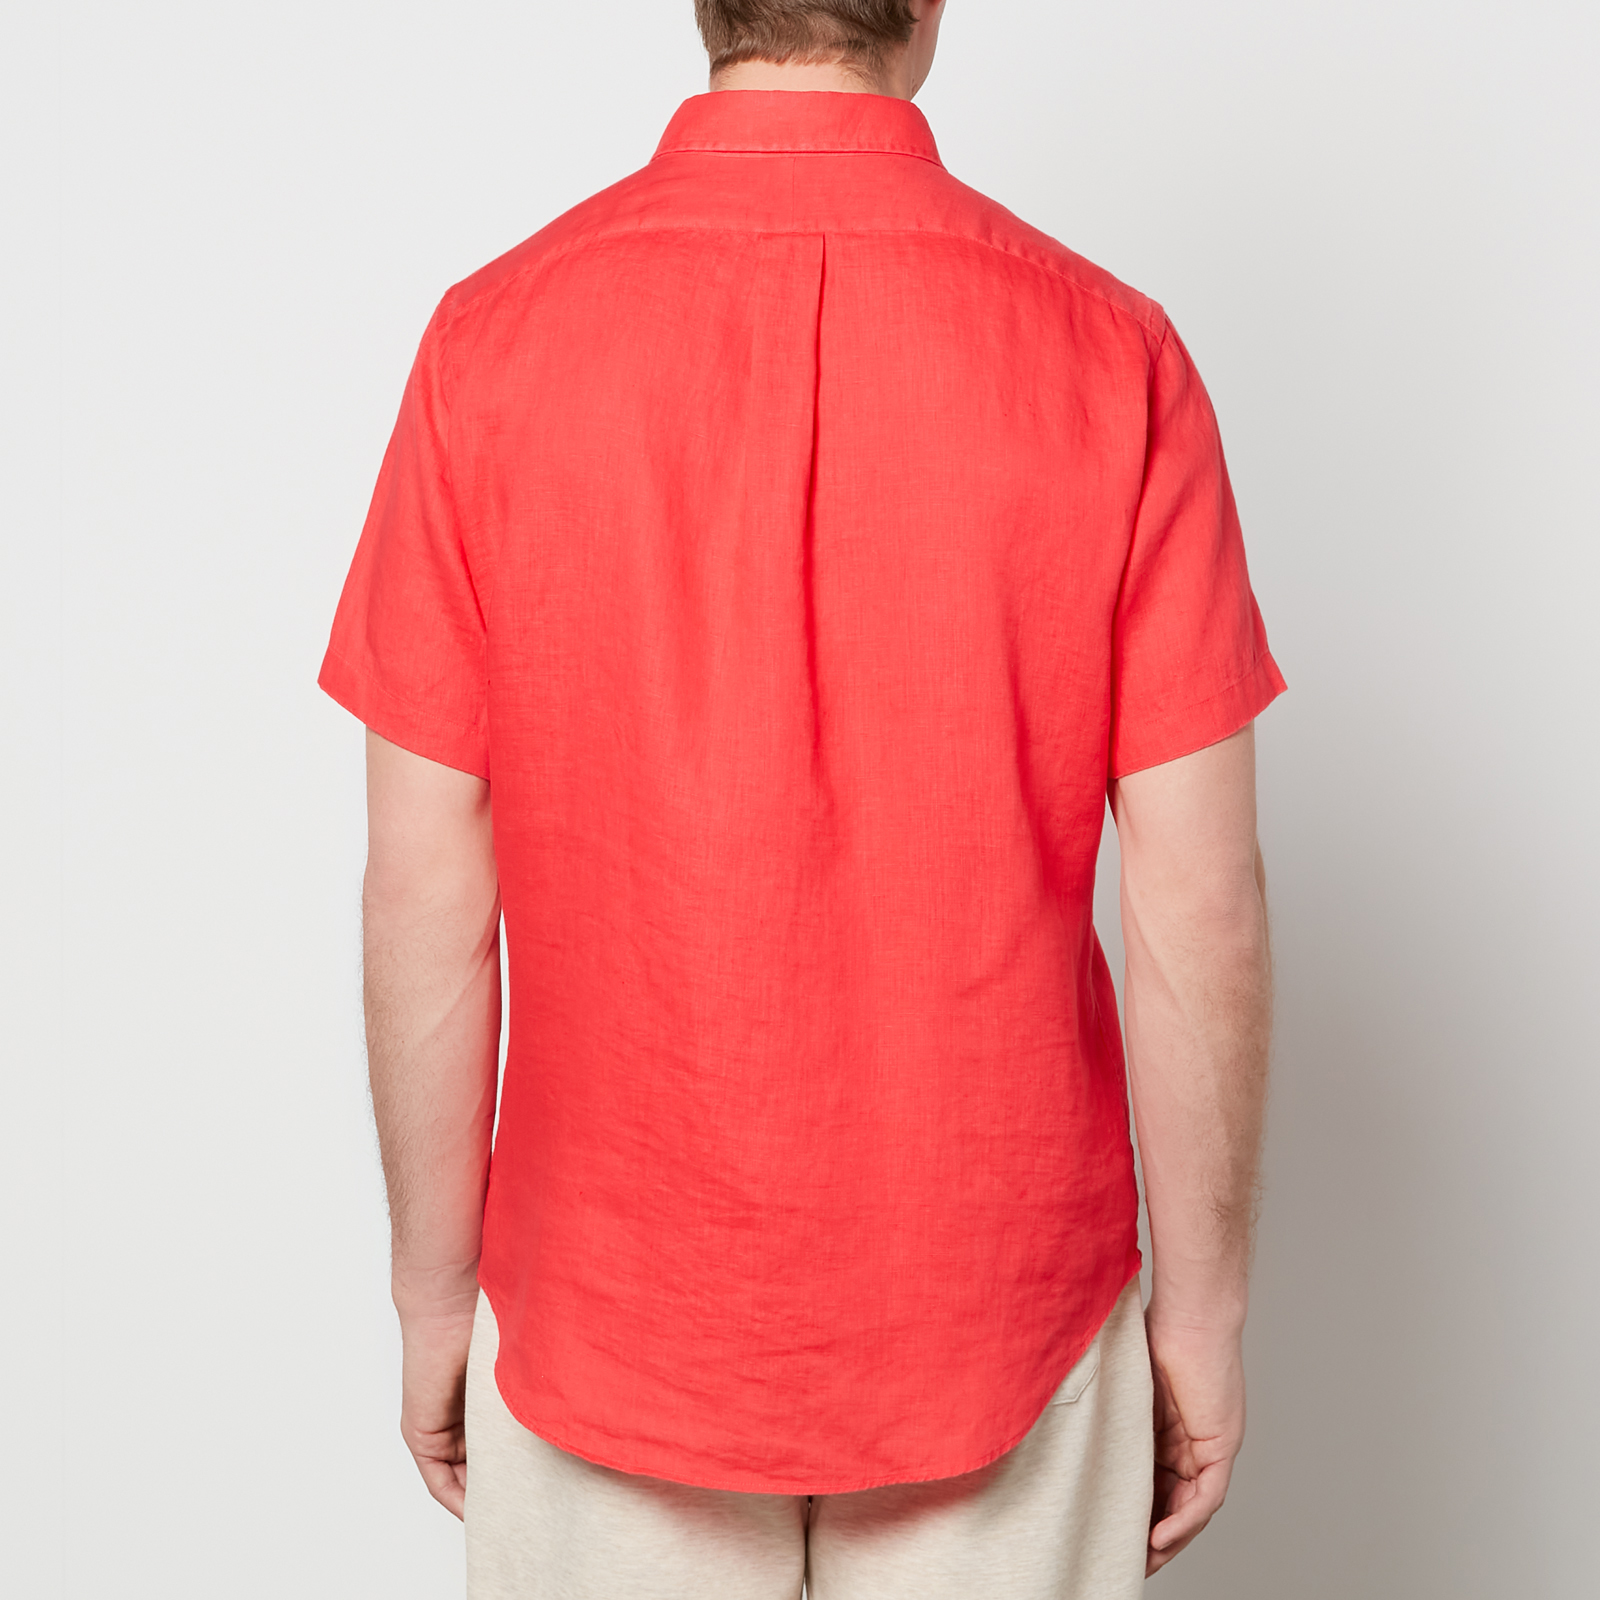 Polo Ralph Lauren Shirt Mens 3XB Suntan RED Long Sleeve Button Up 3XL BIG  A36